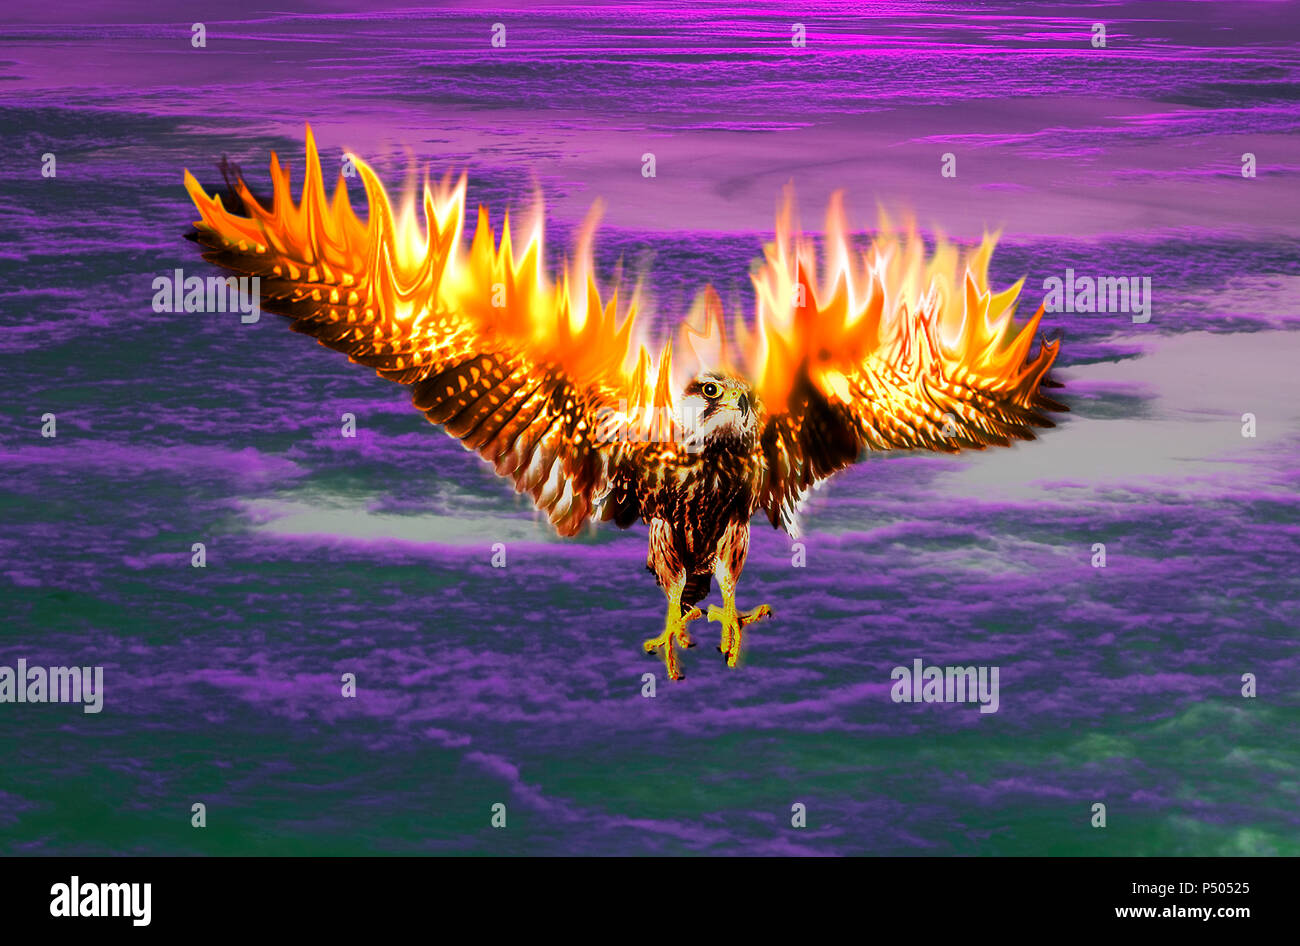 Un oiseau phoenix le feu, in flames Banque D'Images